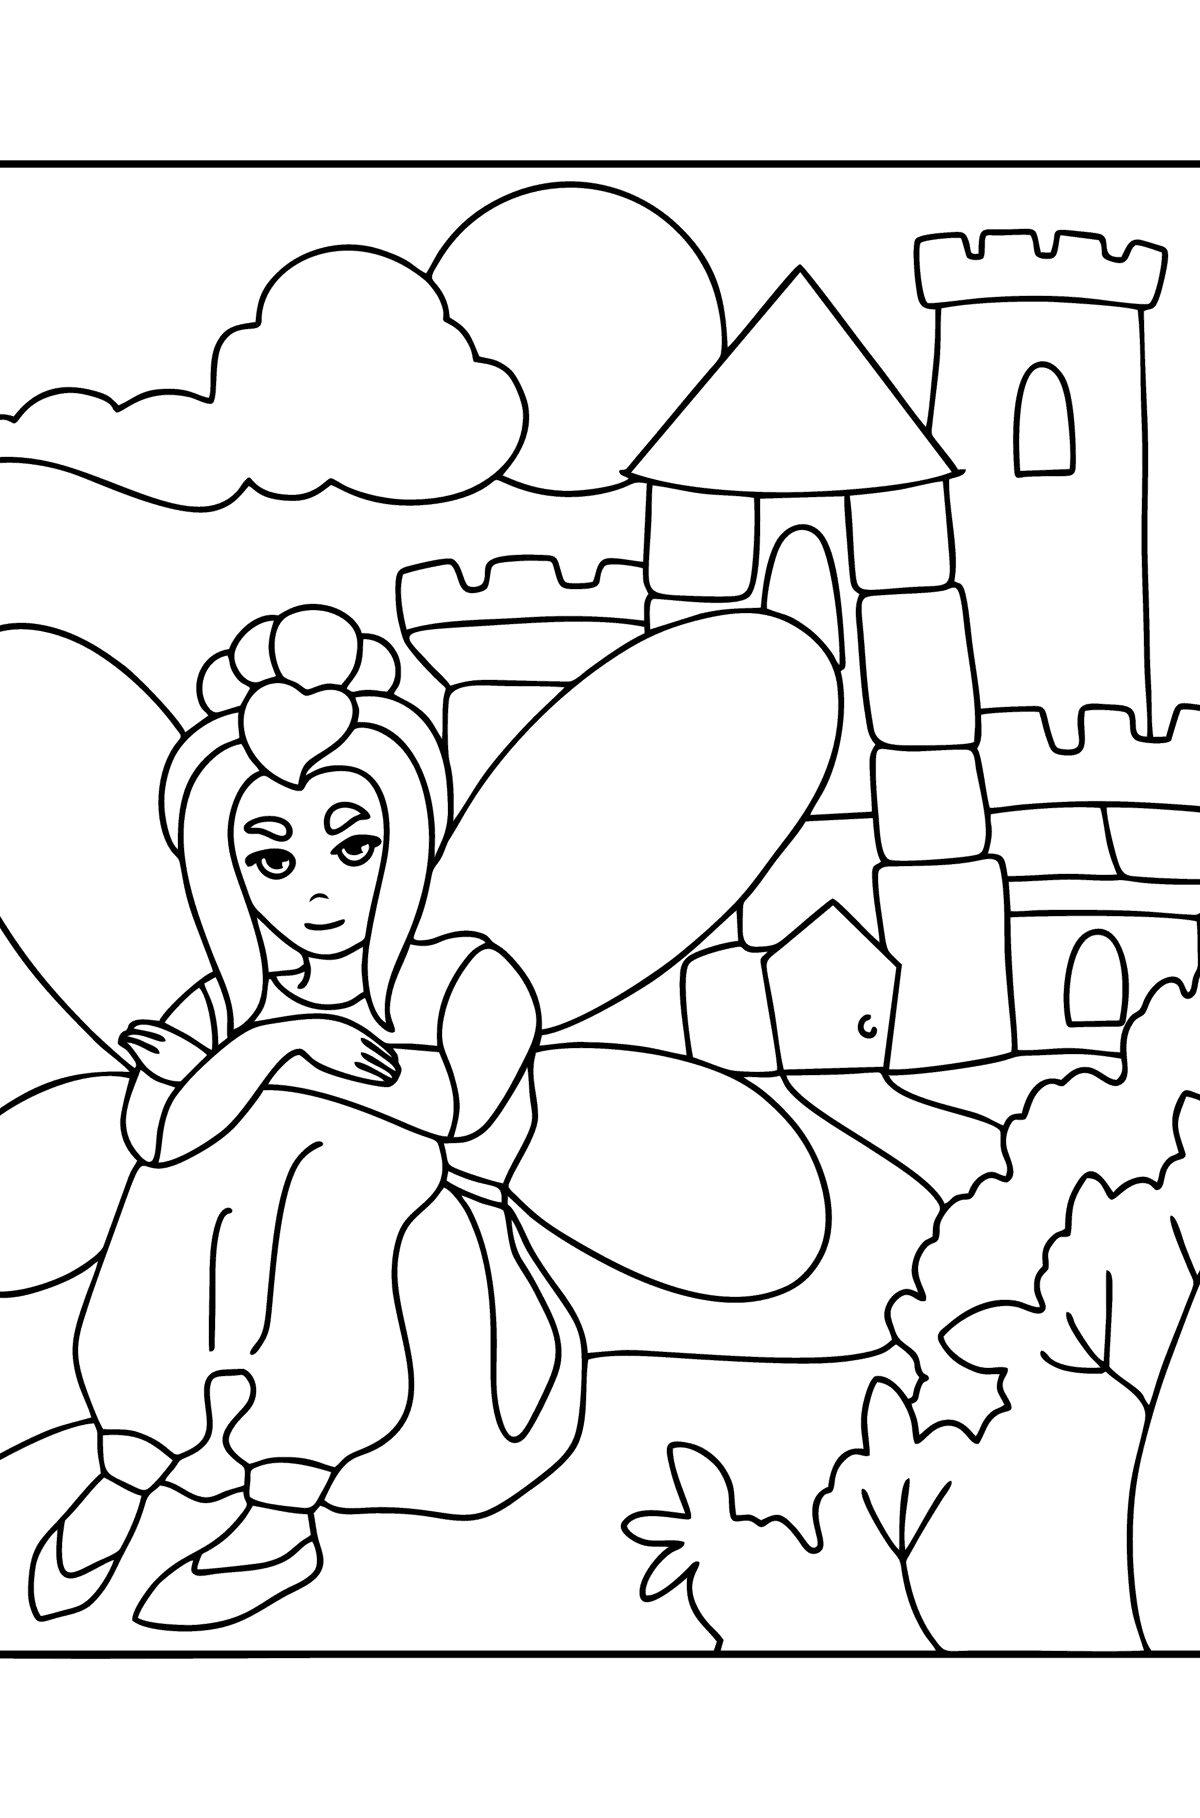 Disegno di Fata al castello da colorare - Disegni da colorare per bambini